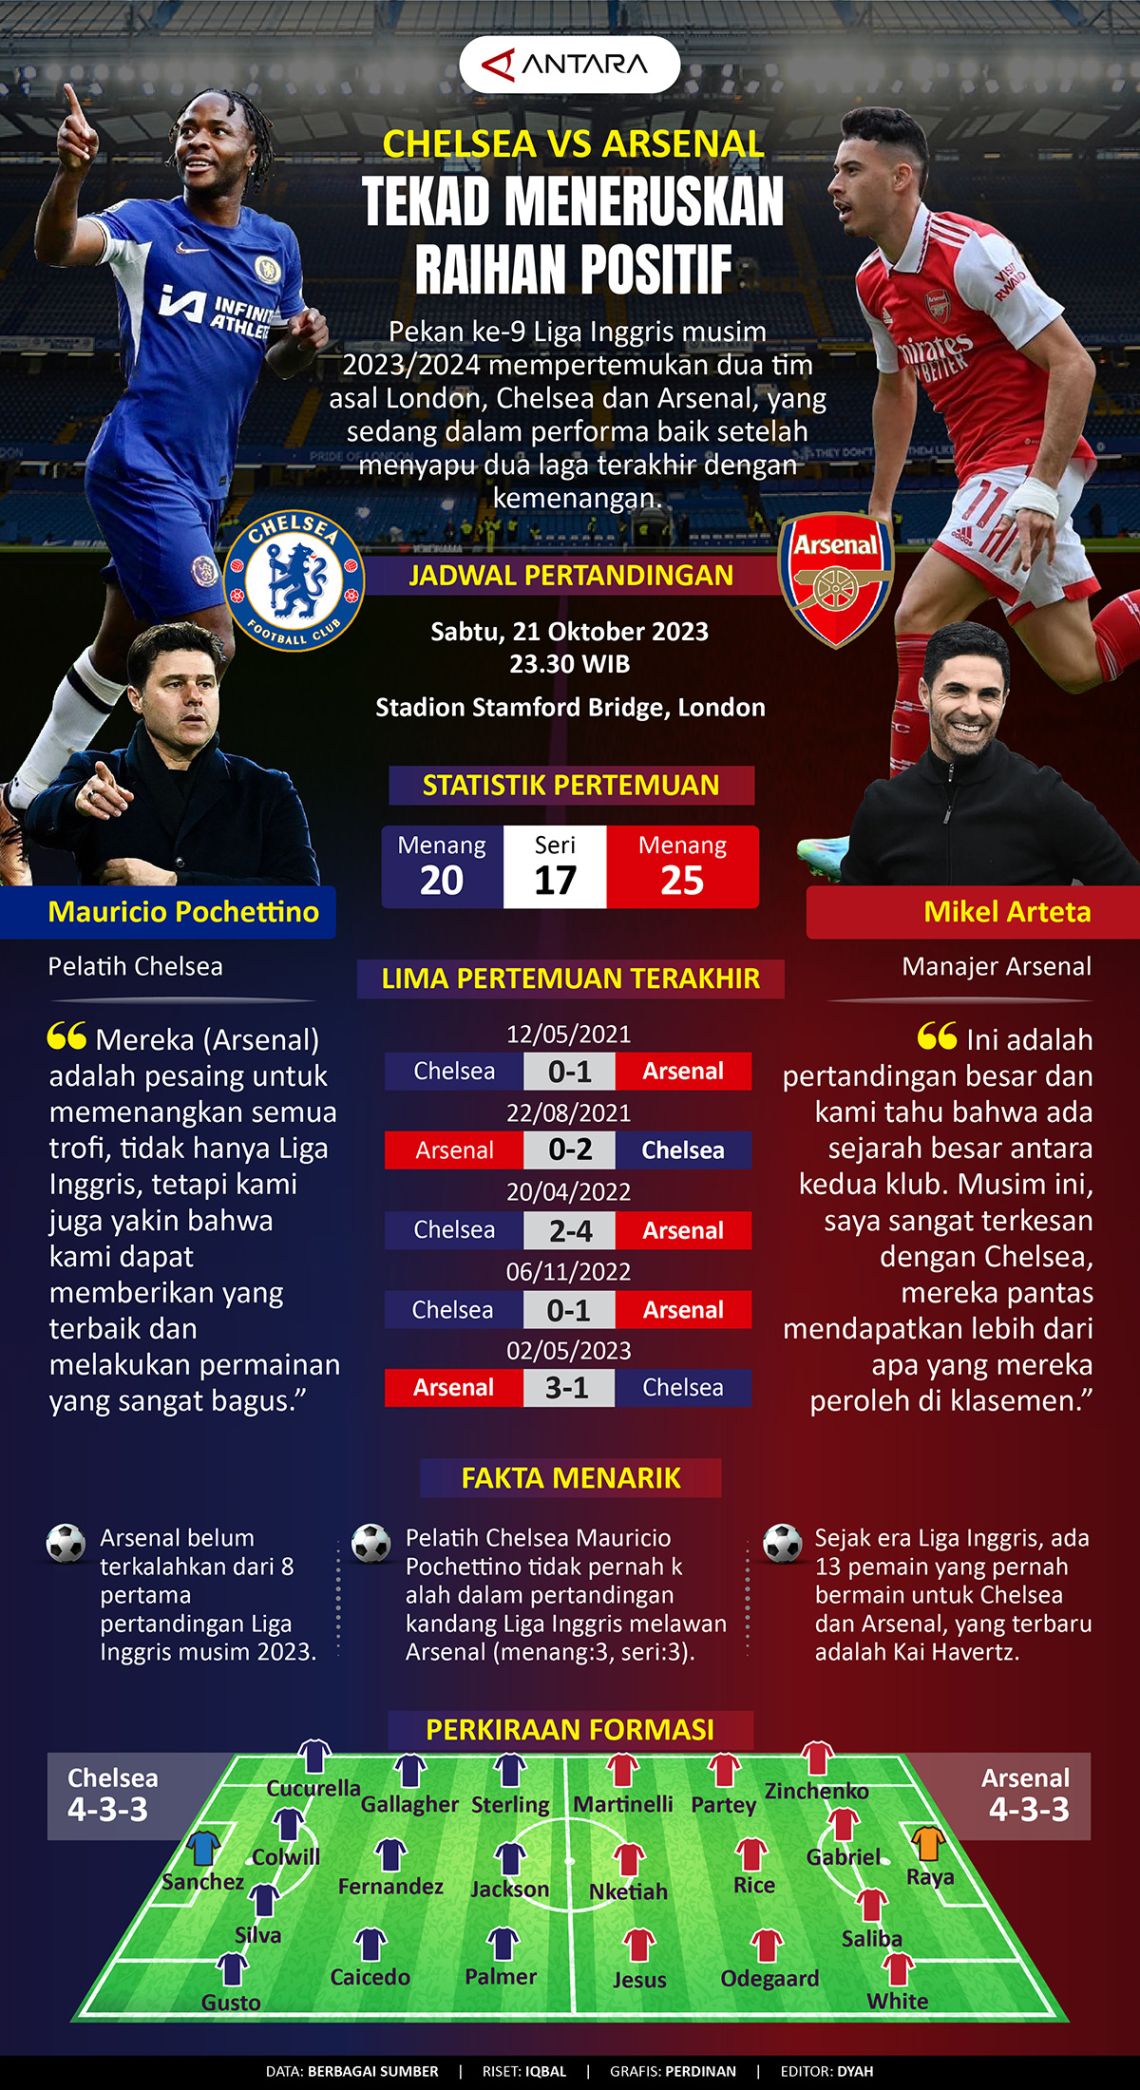 Chelsea vs Arsenal: Tekad meneruskan raihan positif